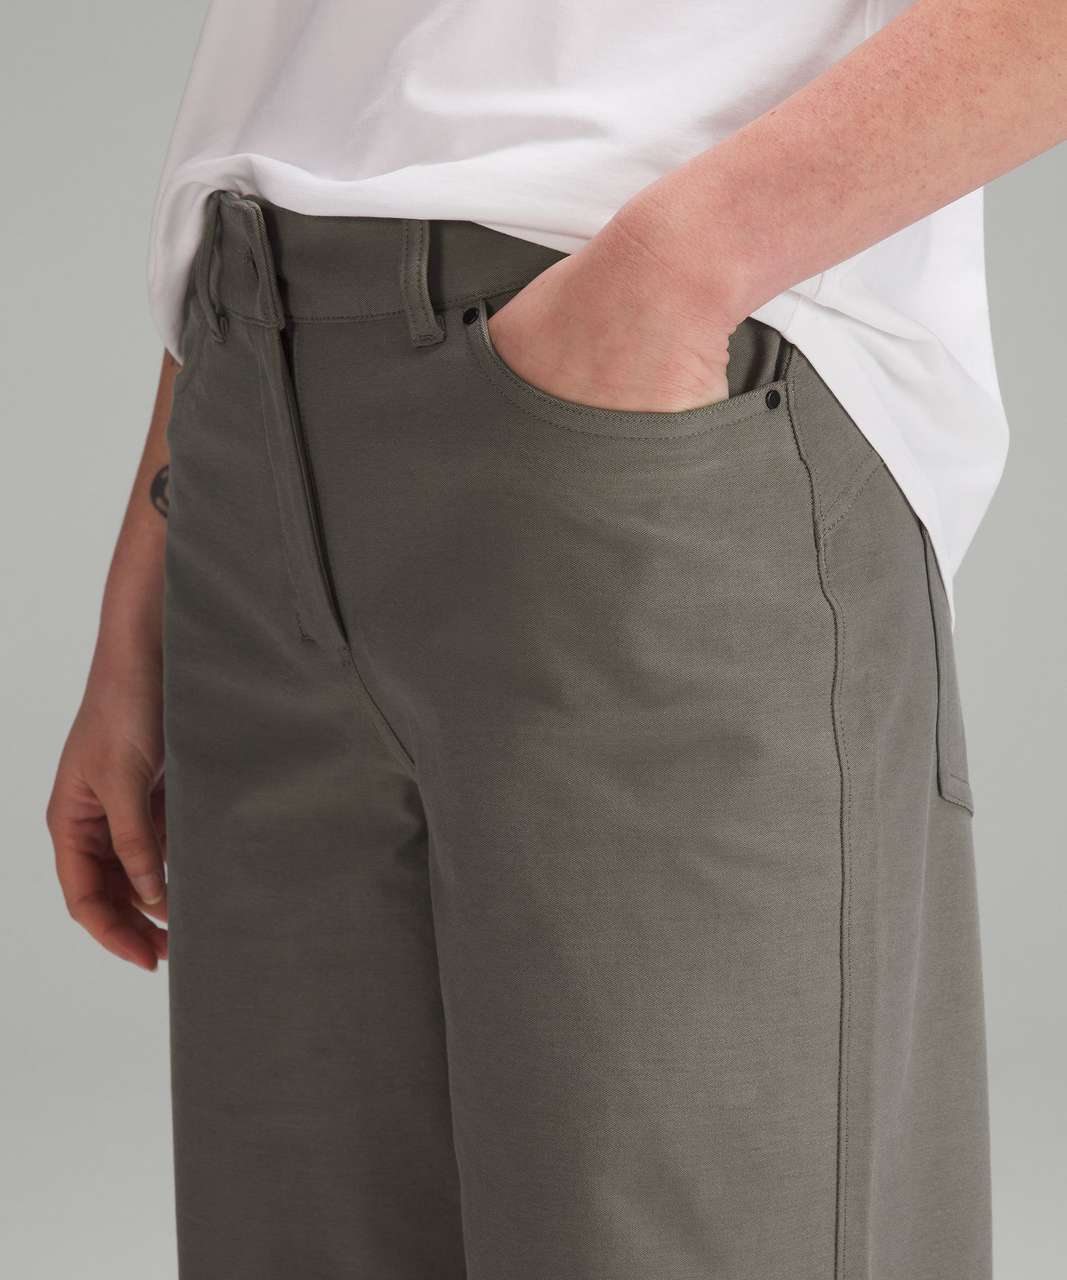 Lululemon - City Sleek 5 Pocket High-Rise Wide-Leg Pant Full Length *Light  Utilitech